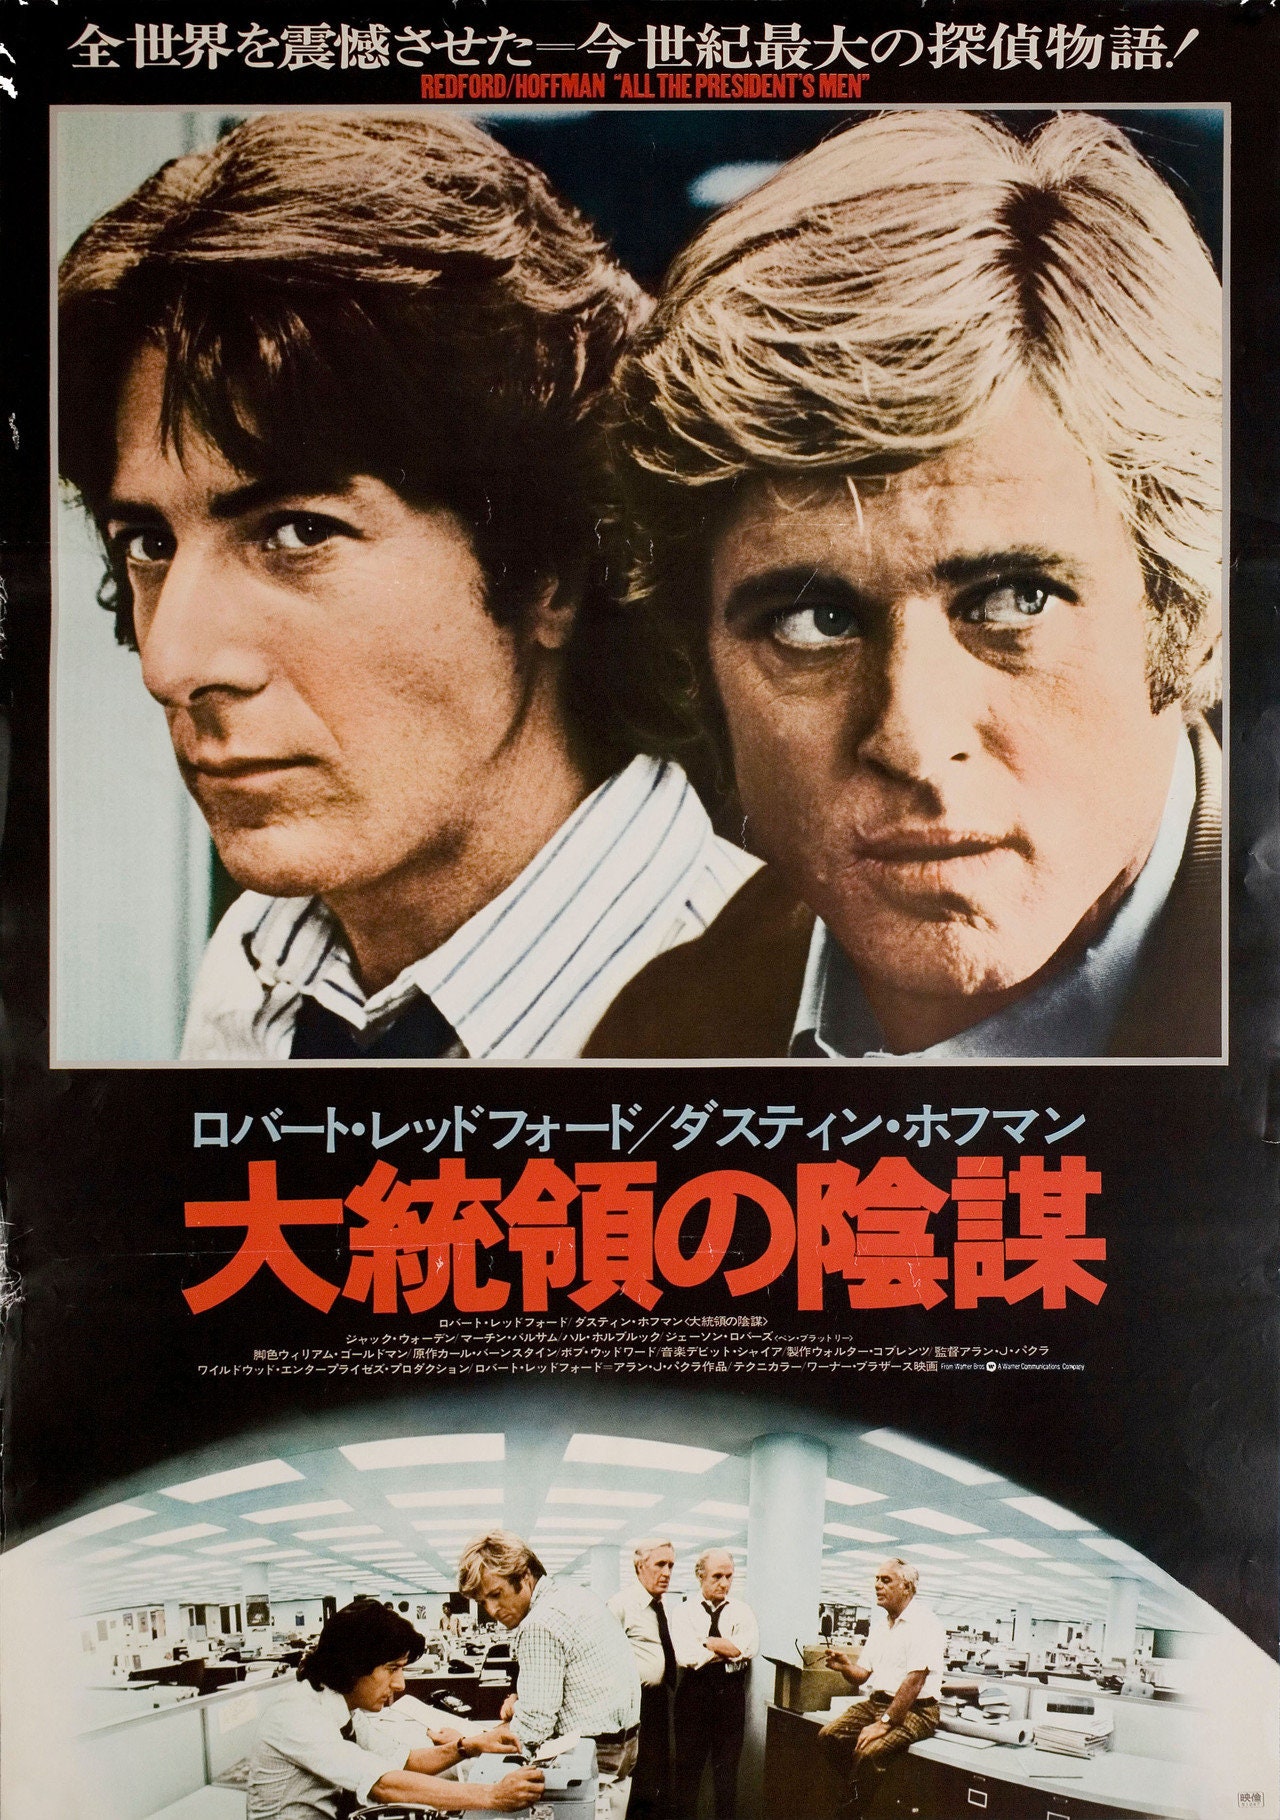 All The President S Men 1976 Japanese B2 Poster Etsy Uk